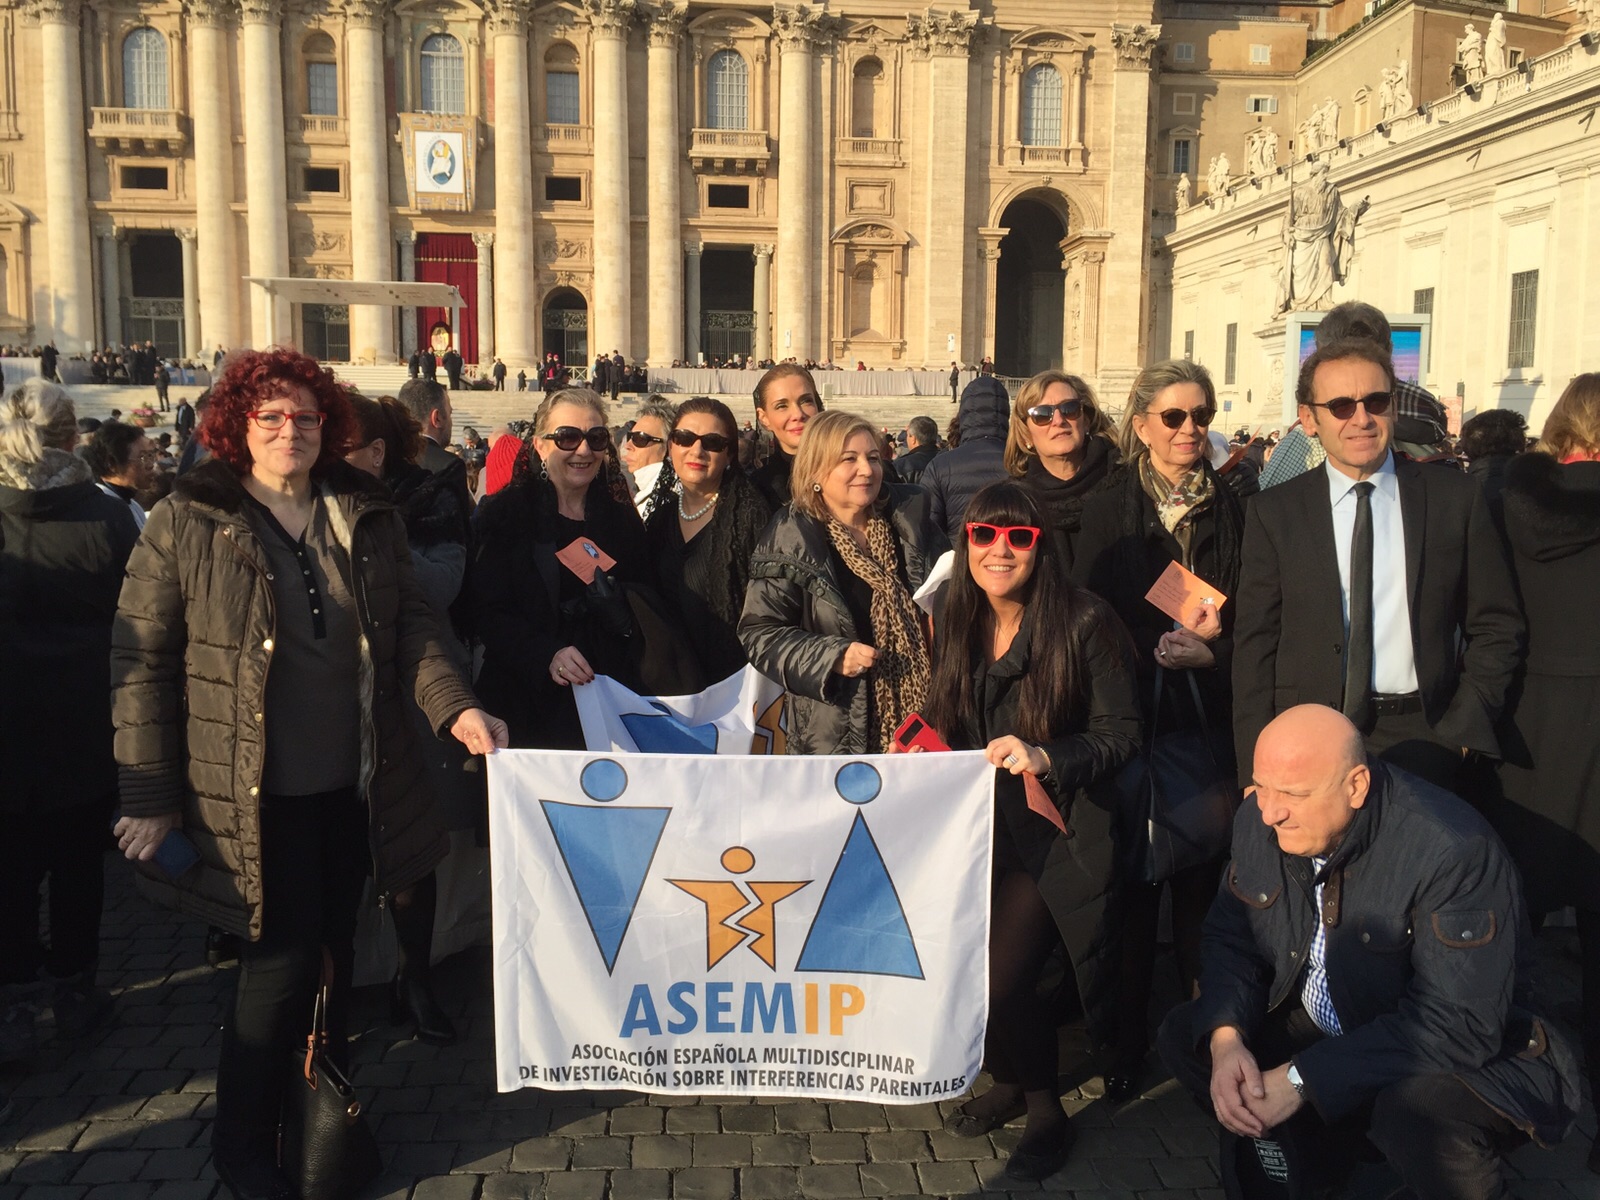 Asemip Visita al Vaticano 2015 -04